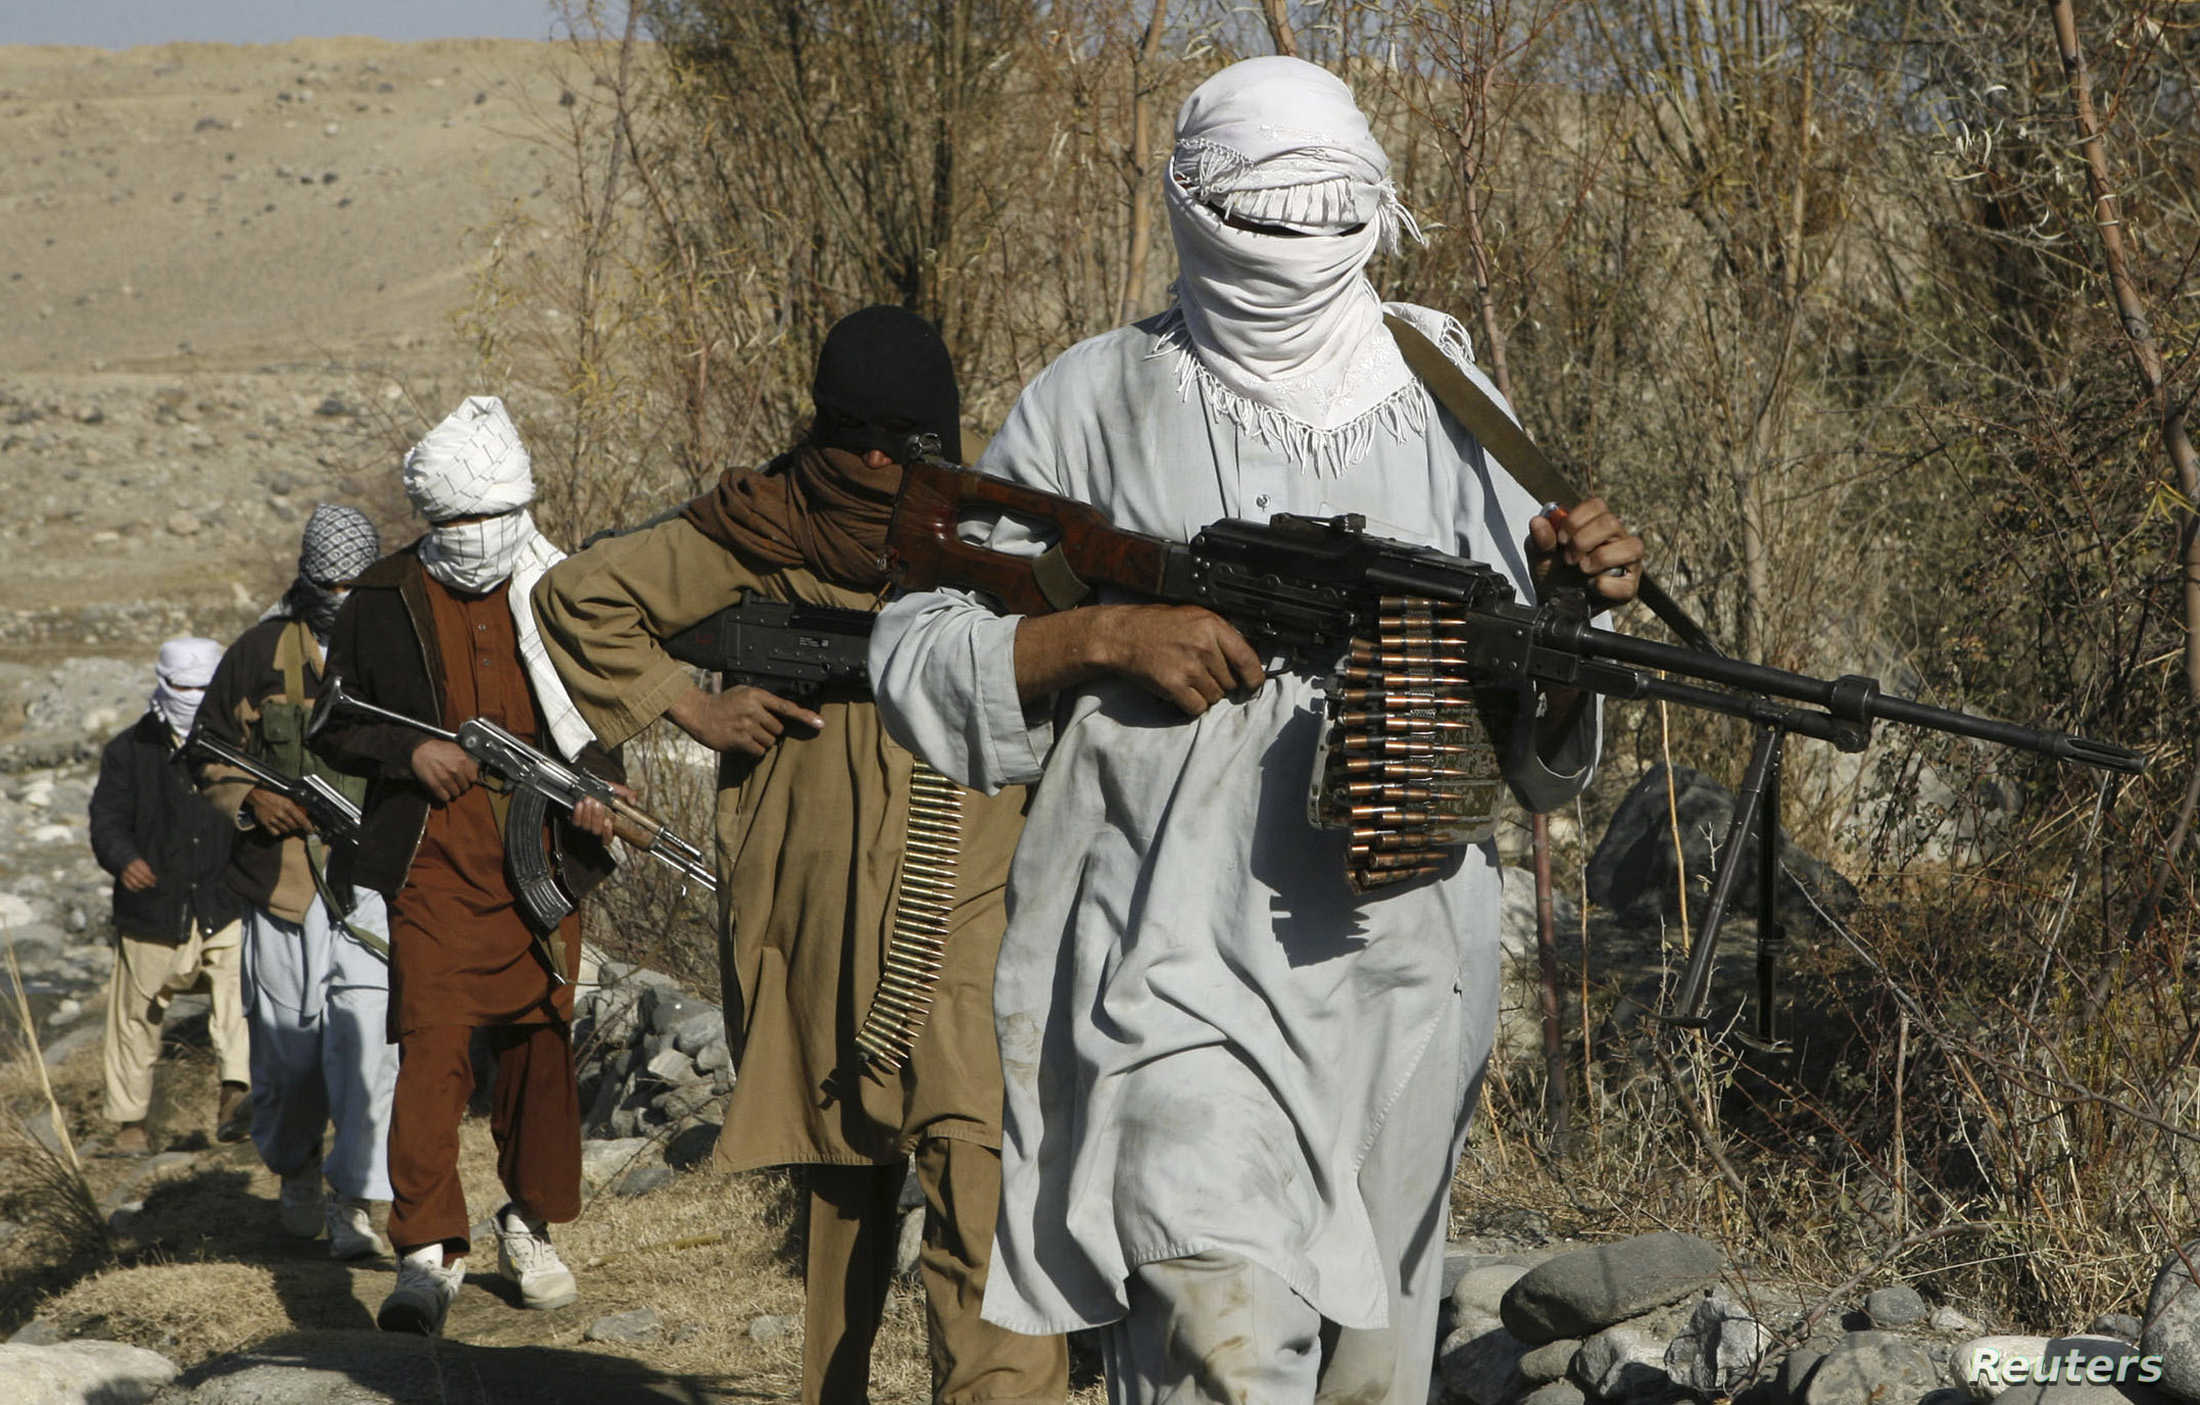 Tehreek-i-Taliban